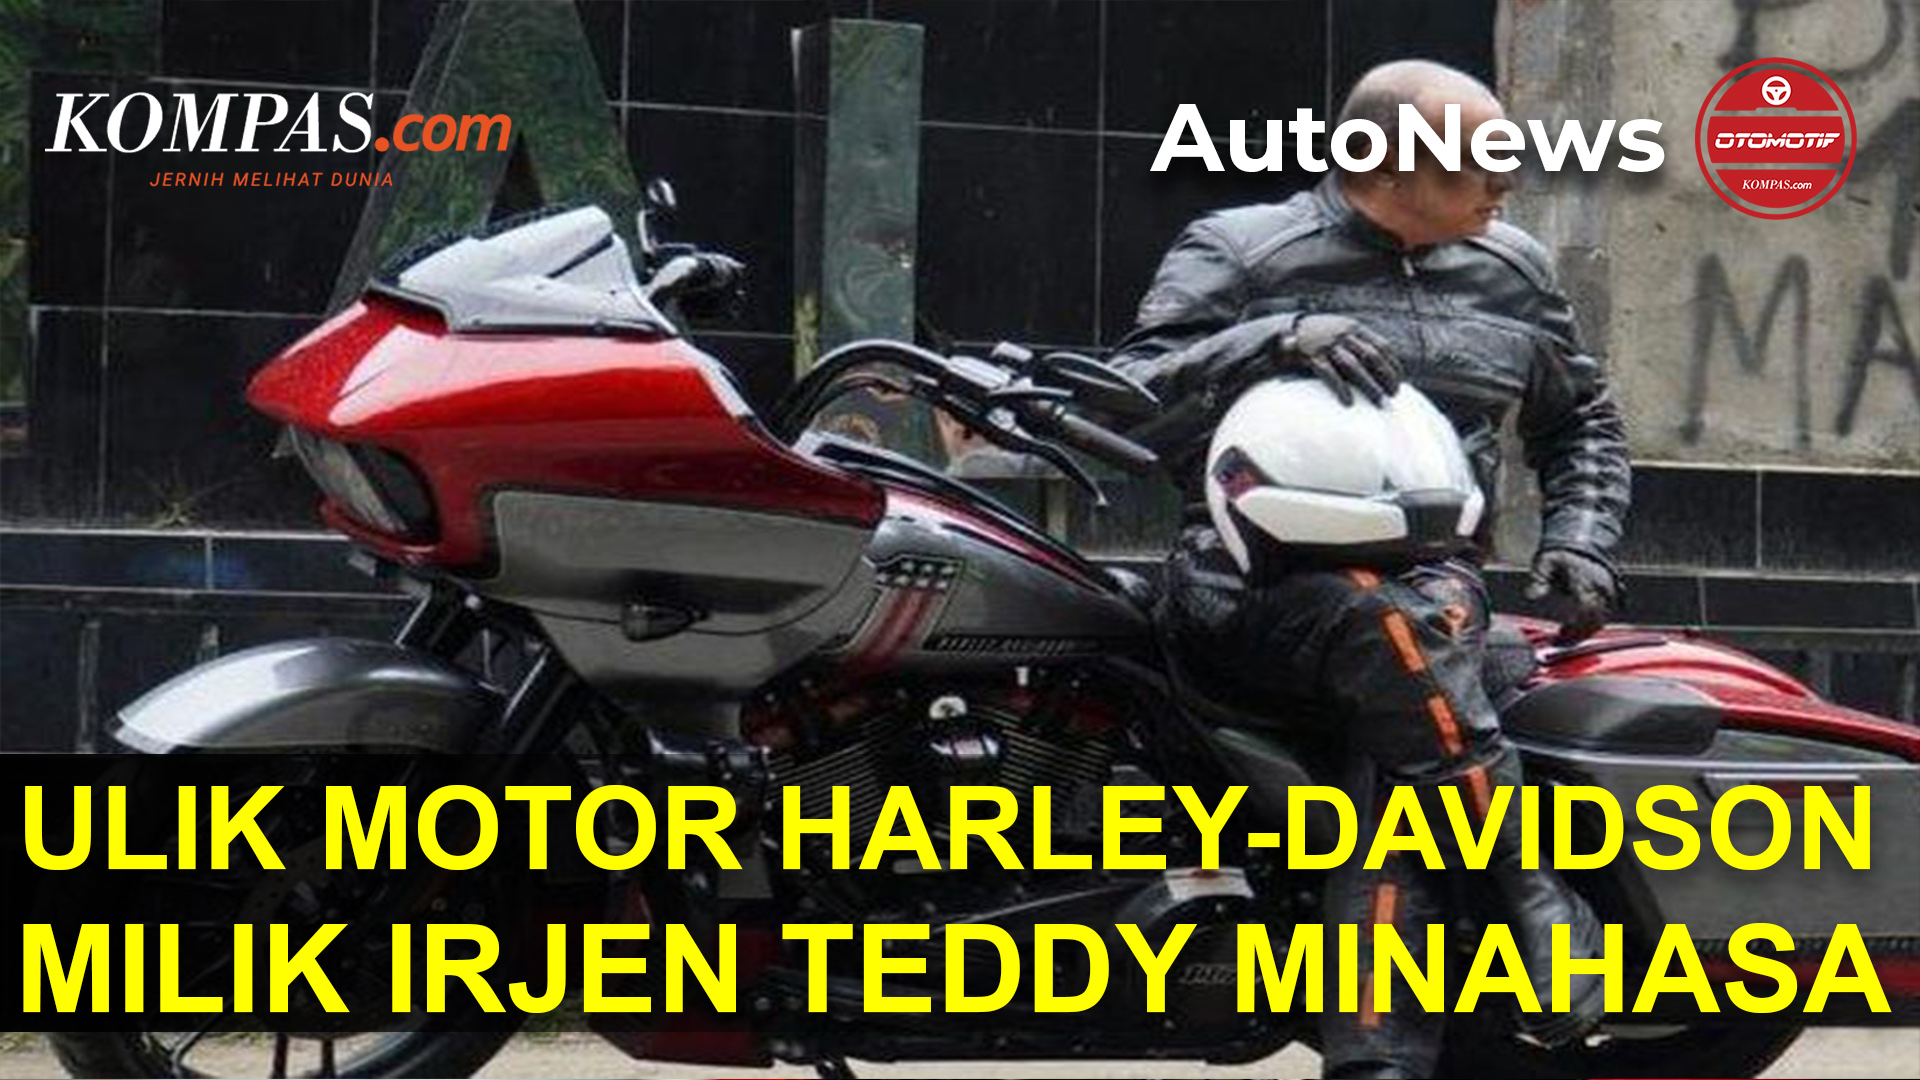 Ulik Motor Harley-Davidson Milik Irjen Teddy Minahasa